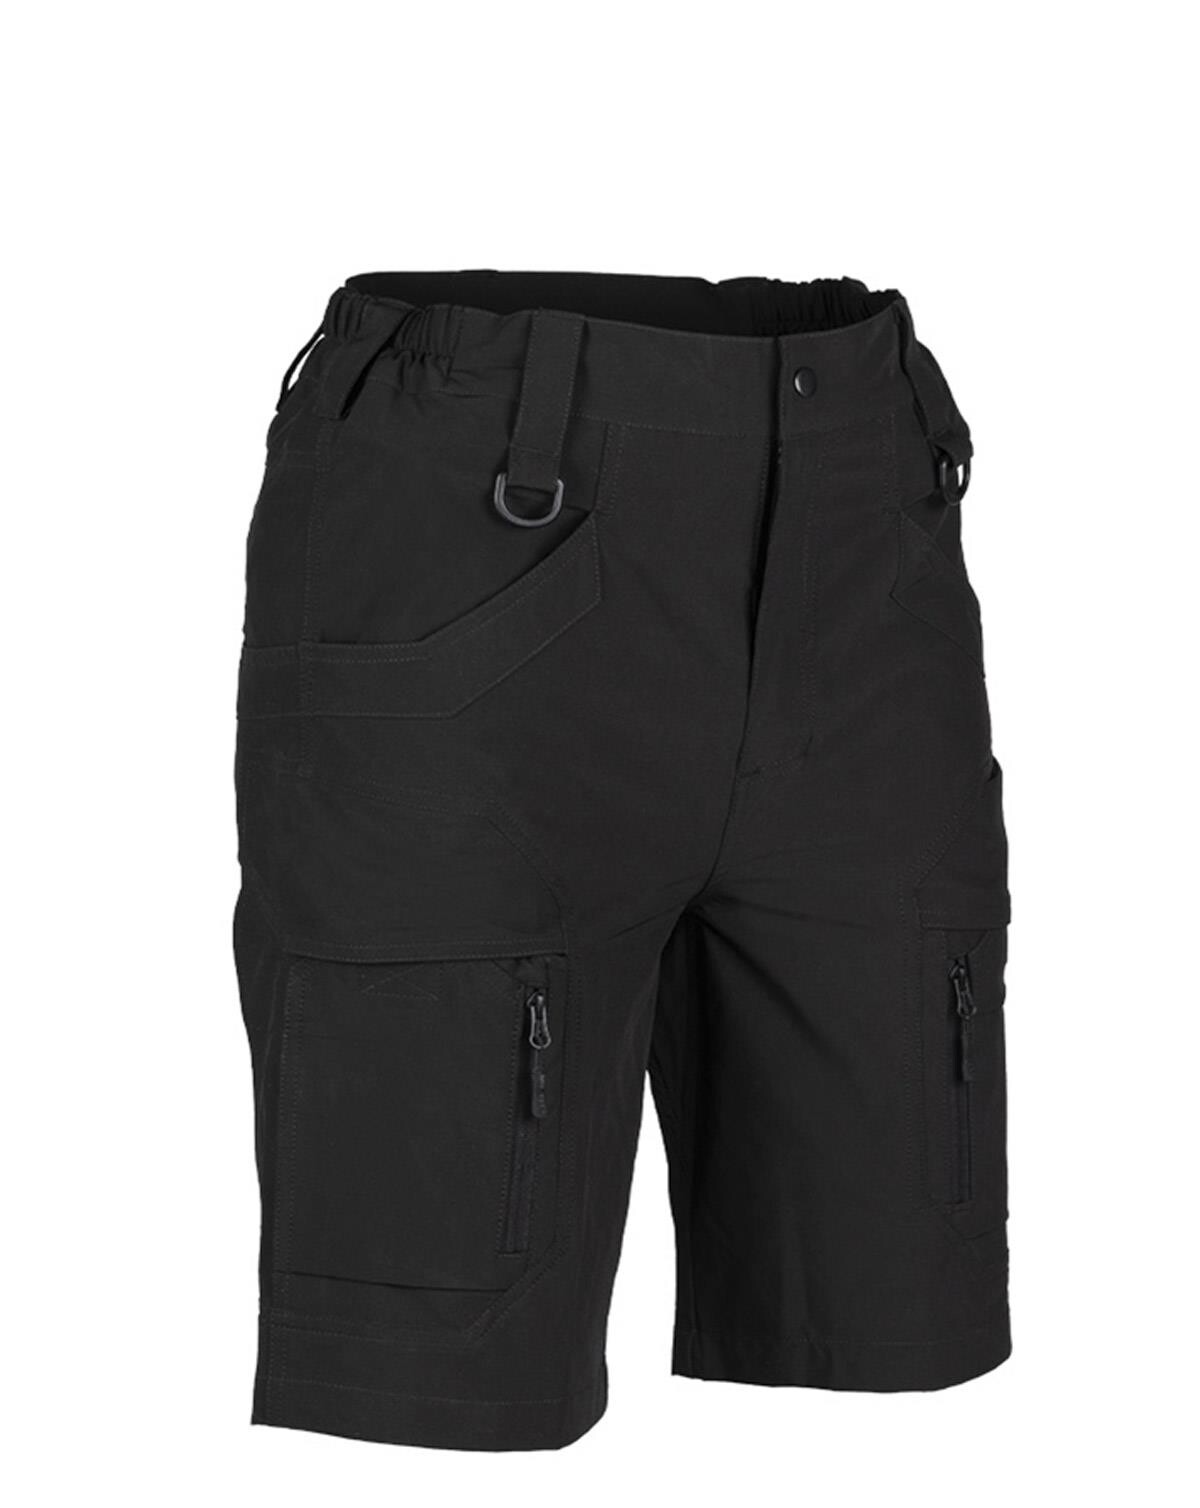 #2 - Mil-Tec Elastic Assault Shorts (Sort, XL)